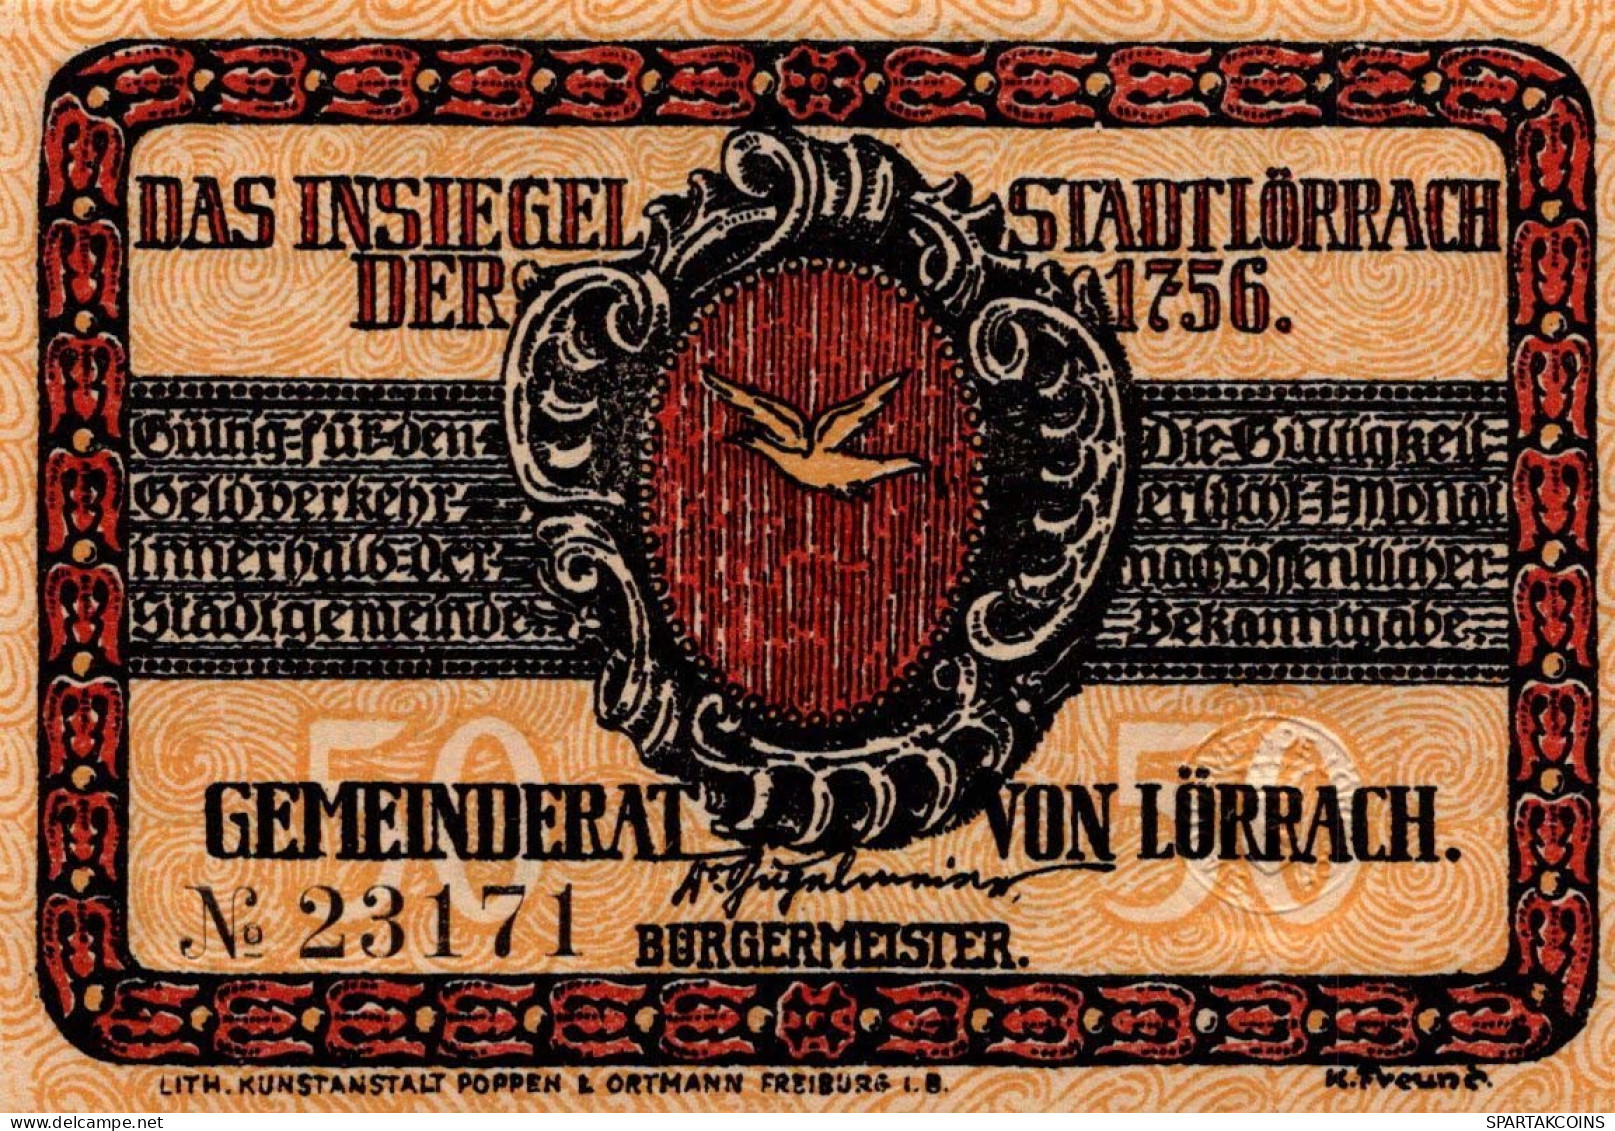 50 PFENNIG 1922 Stadt LoRRACH Baden UNC DEUTSCHLAND Notgeld Banknote #PC488 - [11] Local Banknote Issues